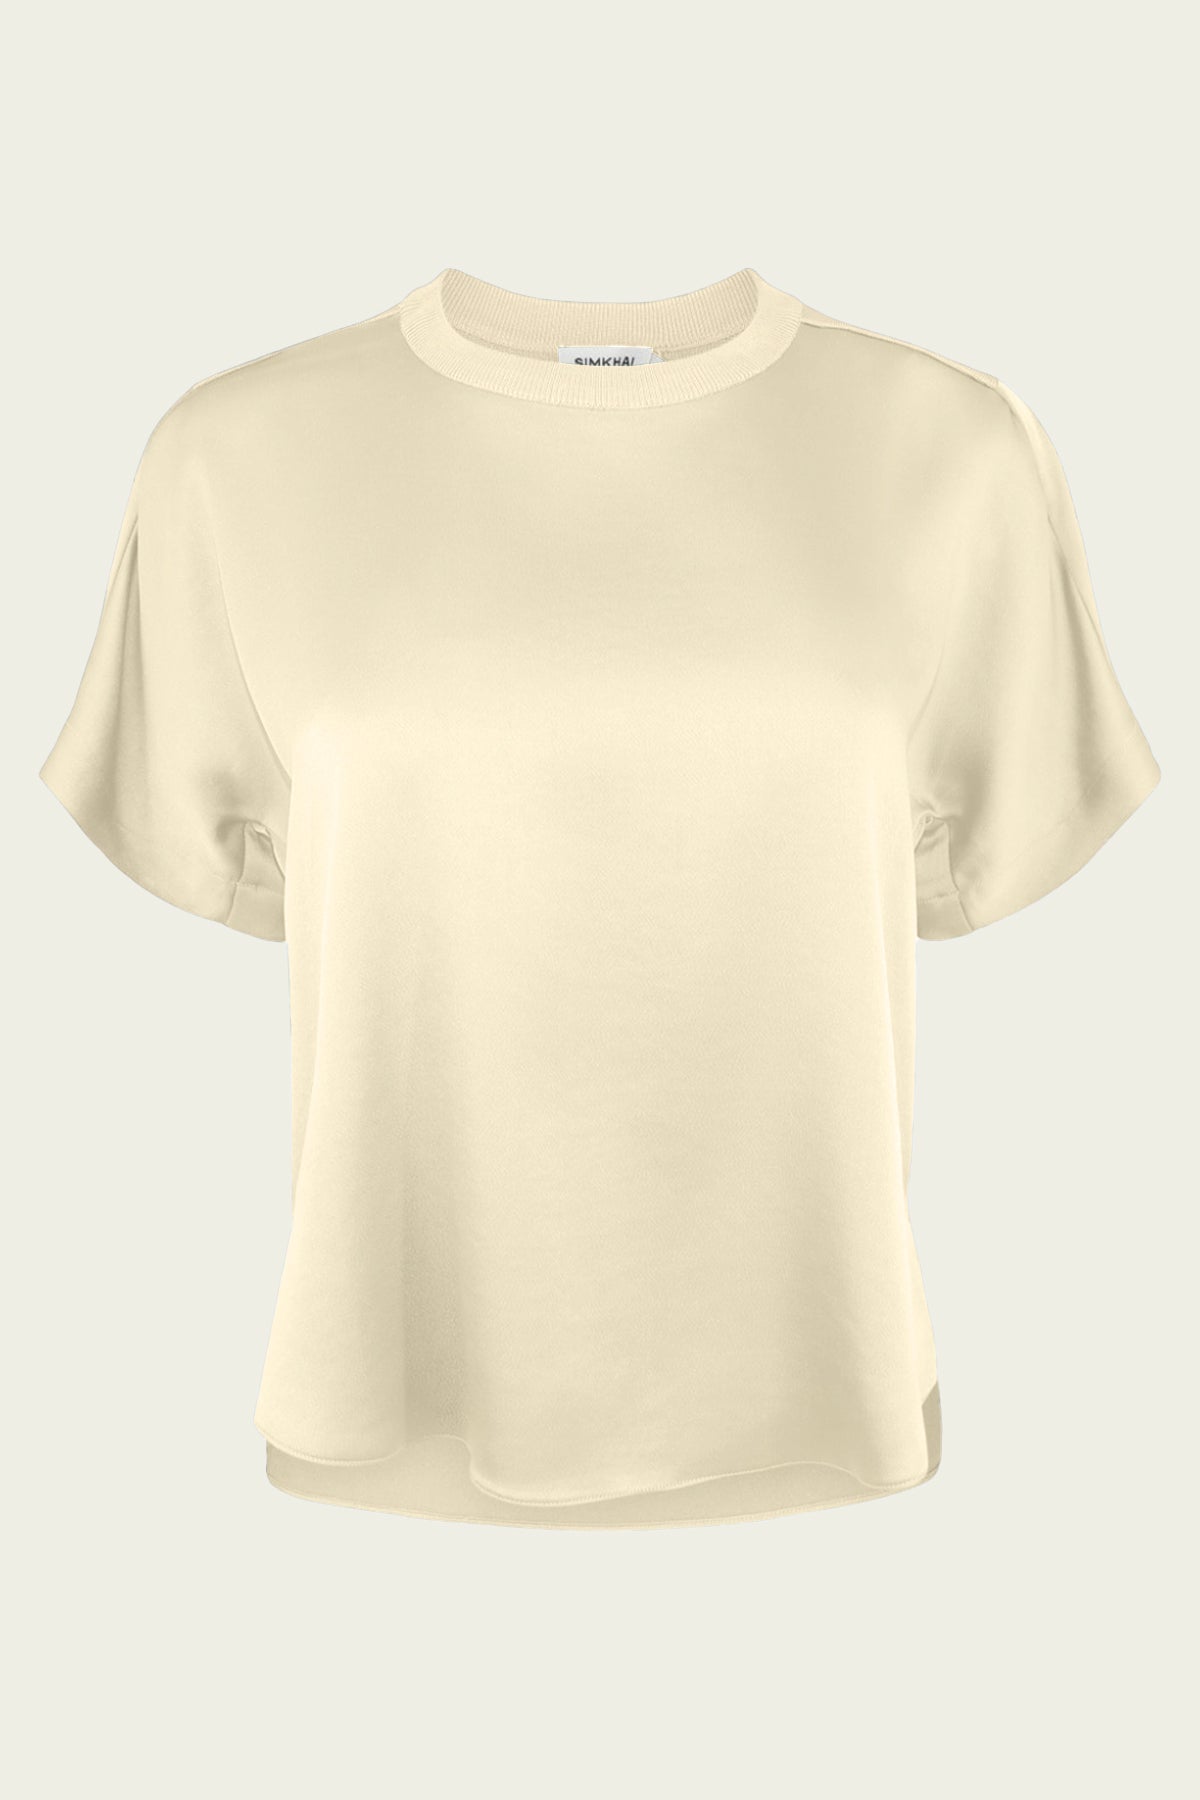 Addy T-Shirt in Ecru - shop-olivia.com